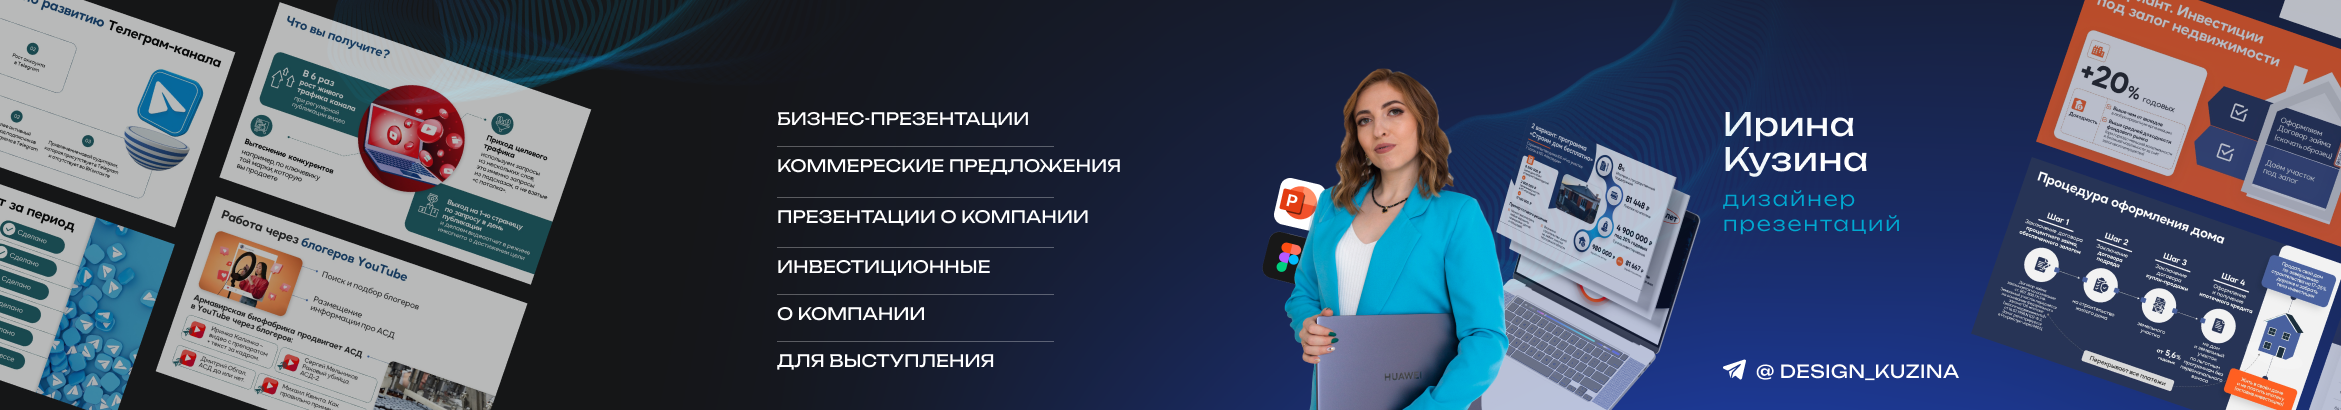 Ирина Кузина | Дизайнер презентаций profil başlığı